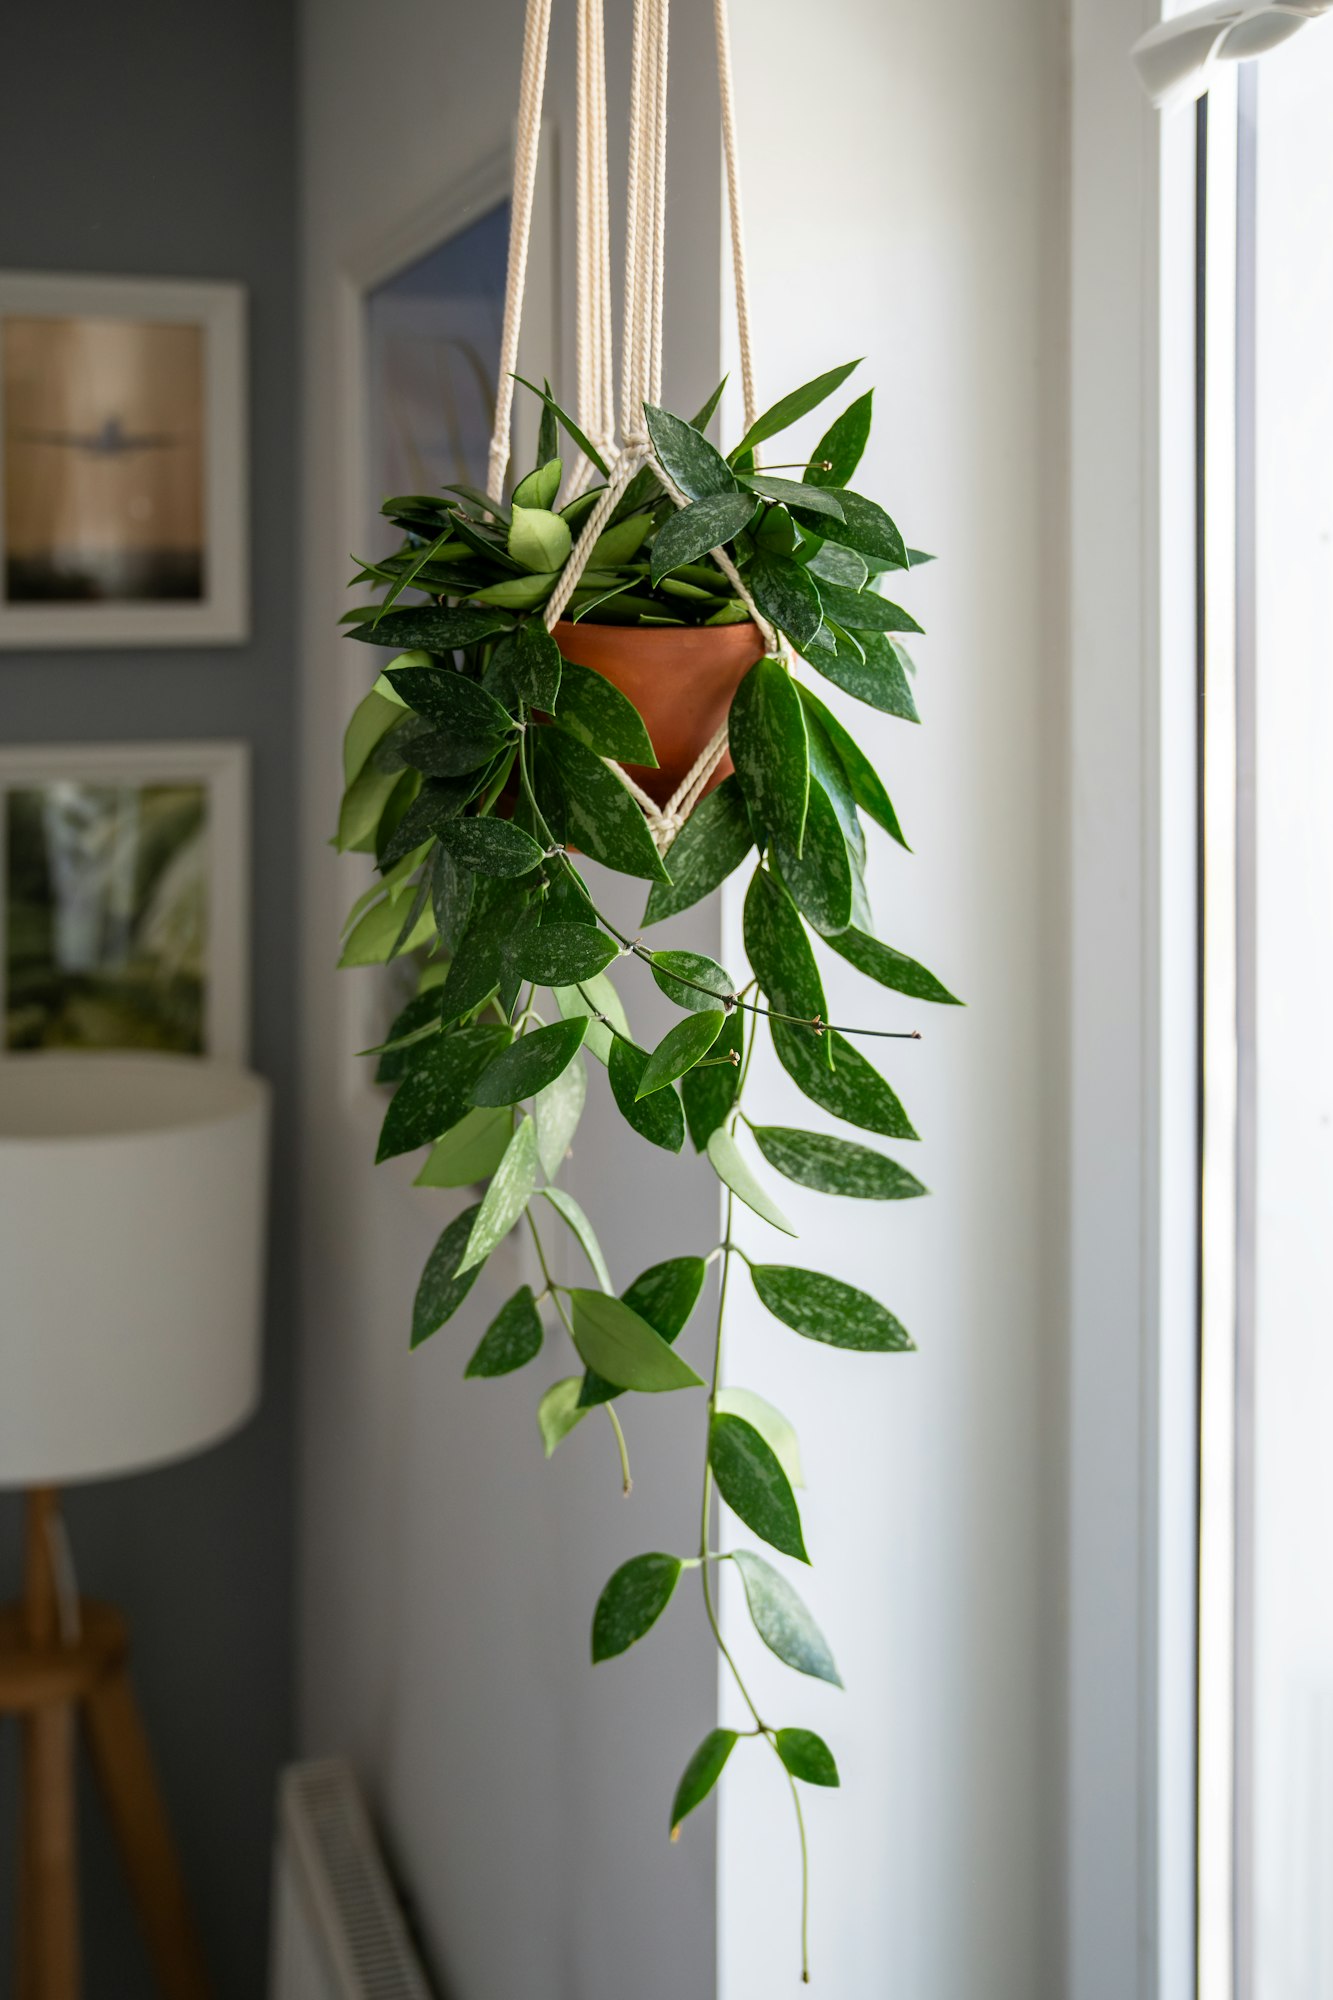 Plant Hoya 